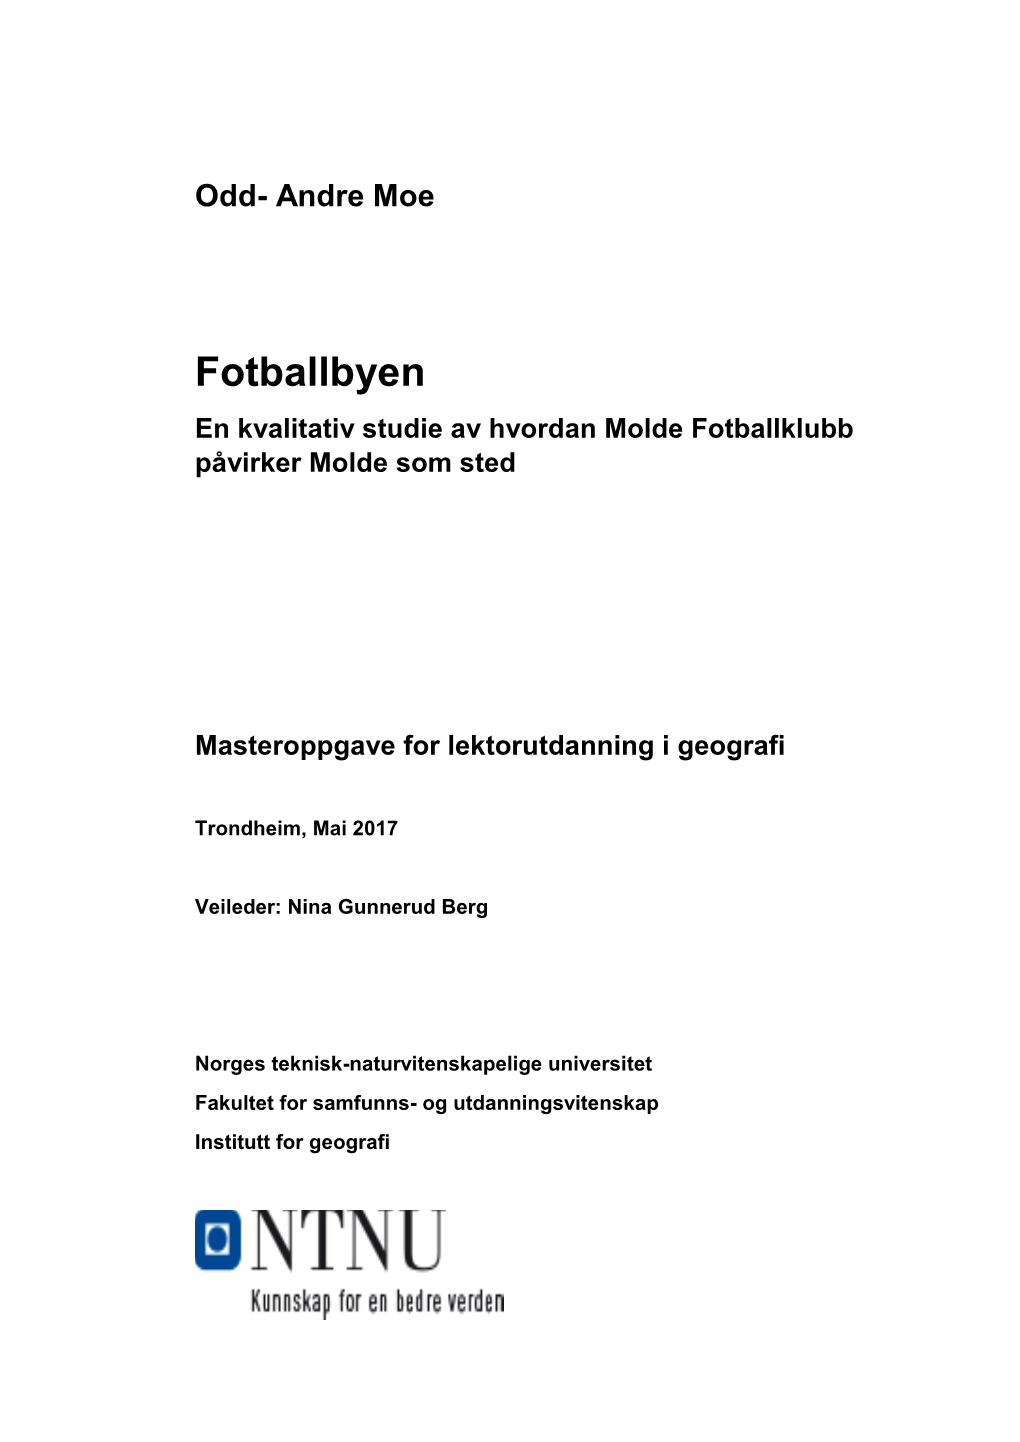 Fotballbyen En Kvalitativ Studie Av Hvordan Molde Fotballklubb Påvirker Molde Som Sted